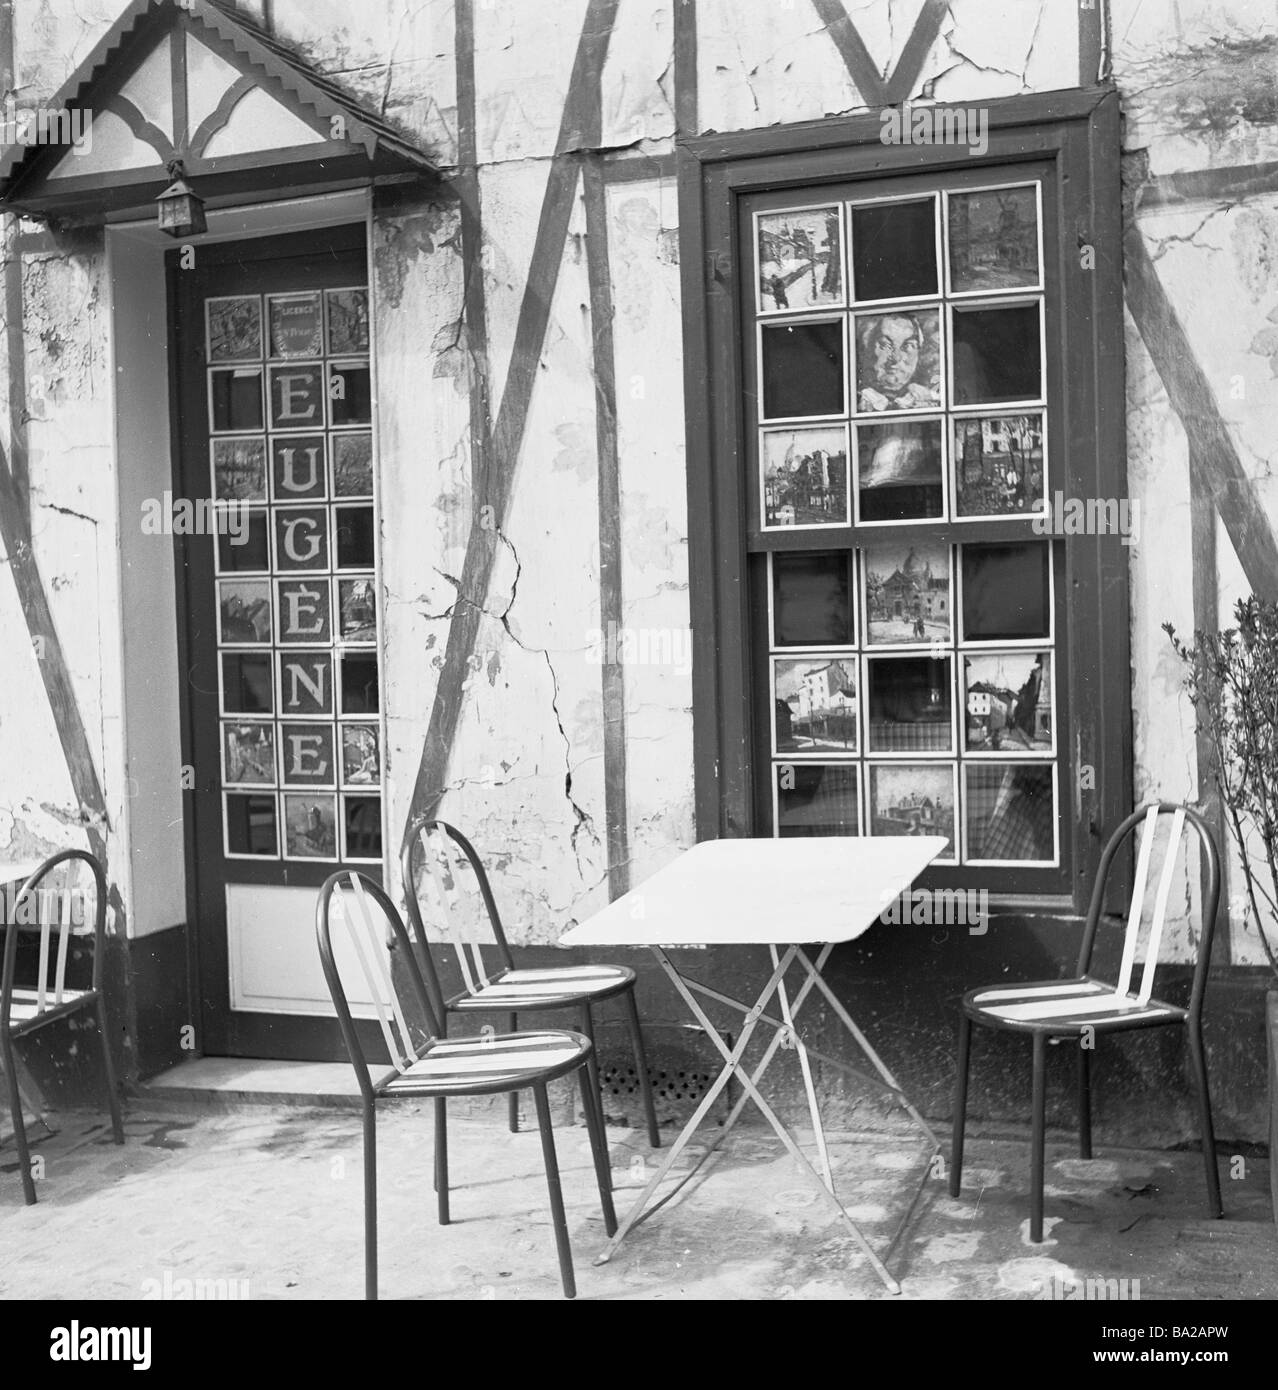 Années 1950, extérieur, Cafe Eugene, Place du Tertre, Montmartre, célèbre pour ses artistes de rue, montrant des peintures dans des vitres et entrée privée, Paris France Banque D'Images